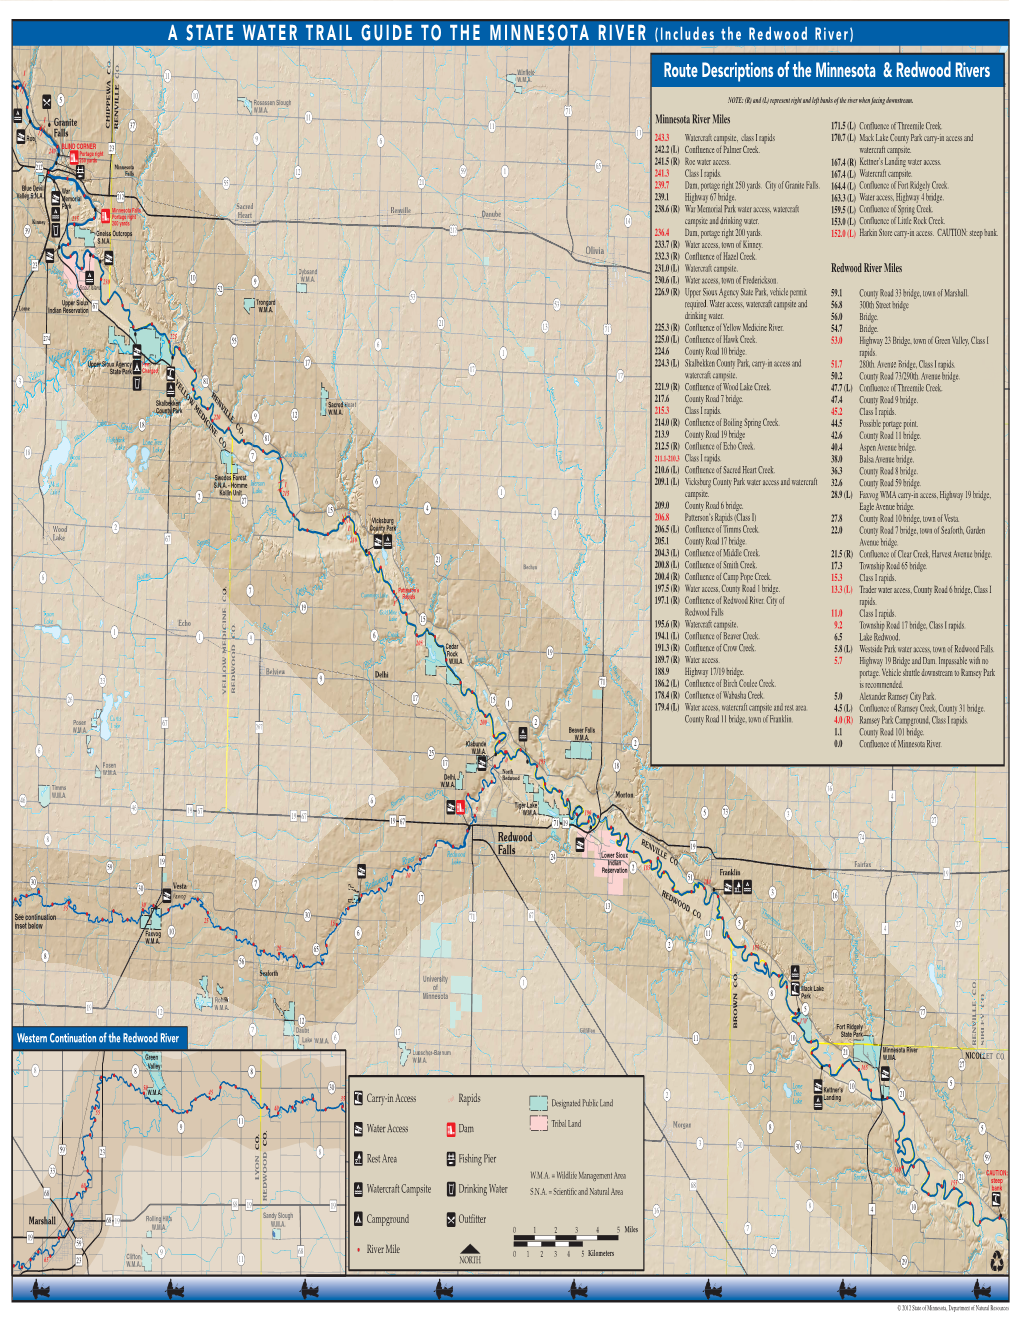 Minnesota-Redwood River Water Trail